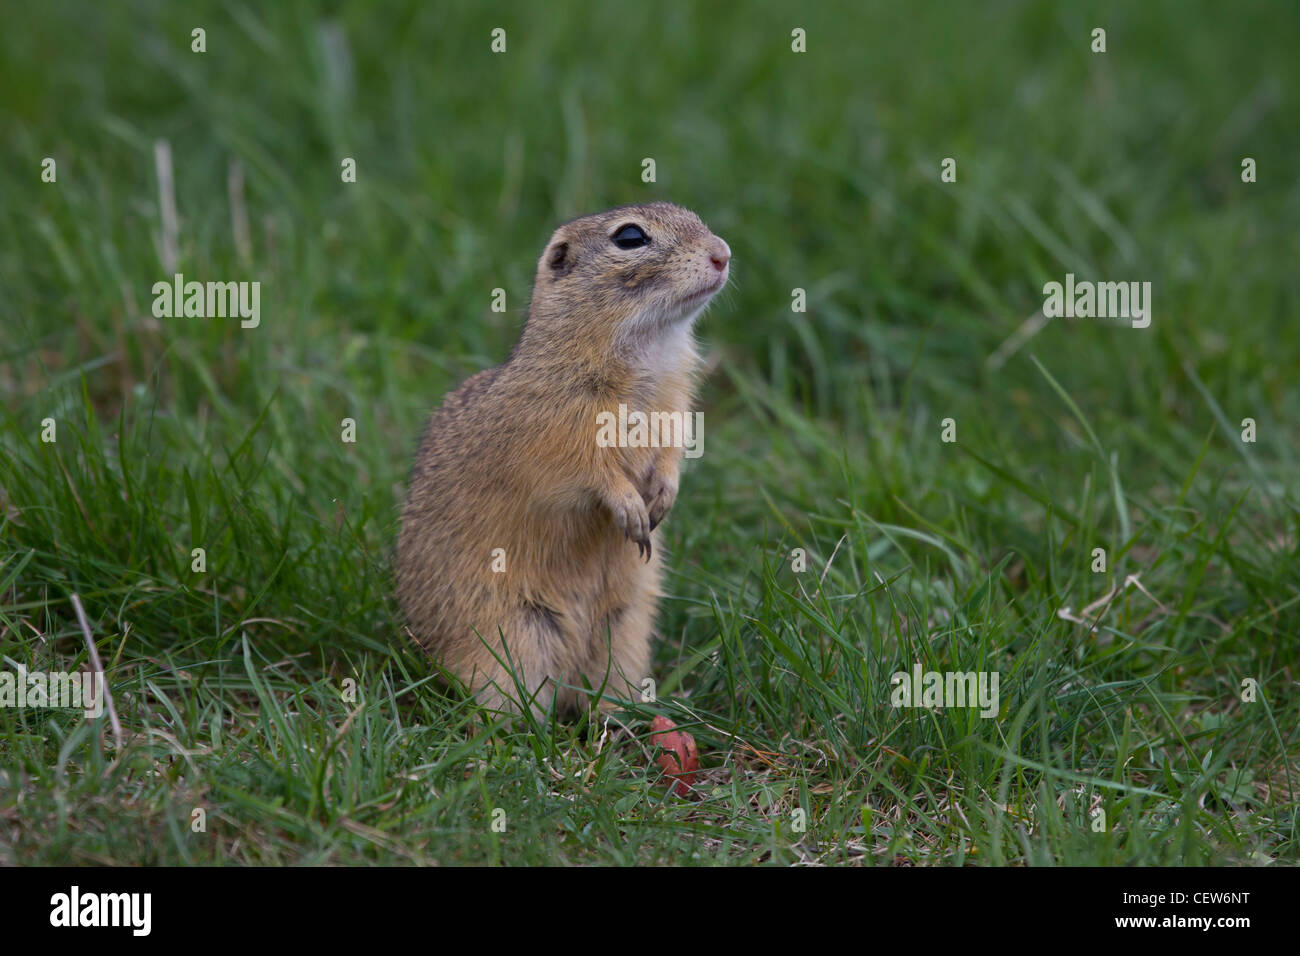 Ziesel, Spermophilus, Syn.: Citellus, ground squirrel Stock Photo